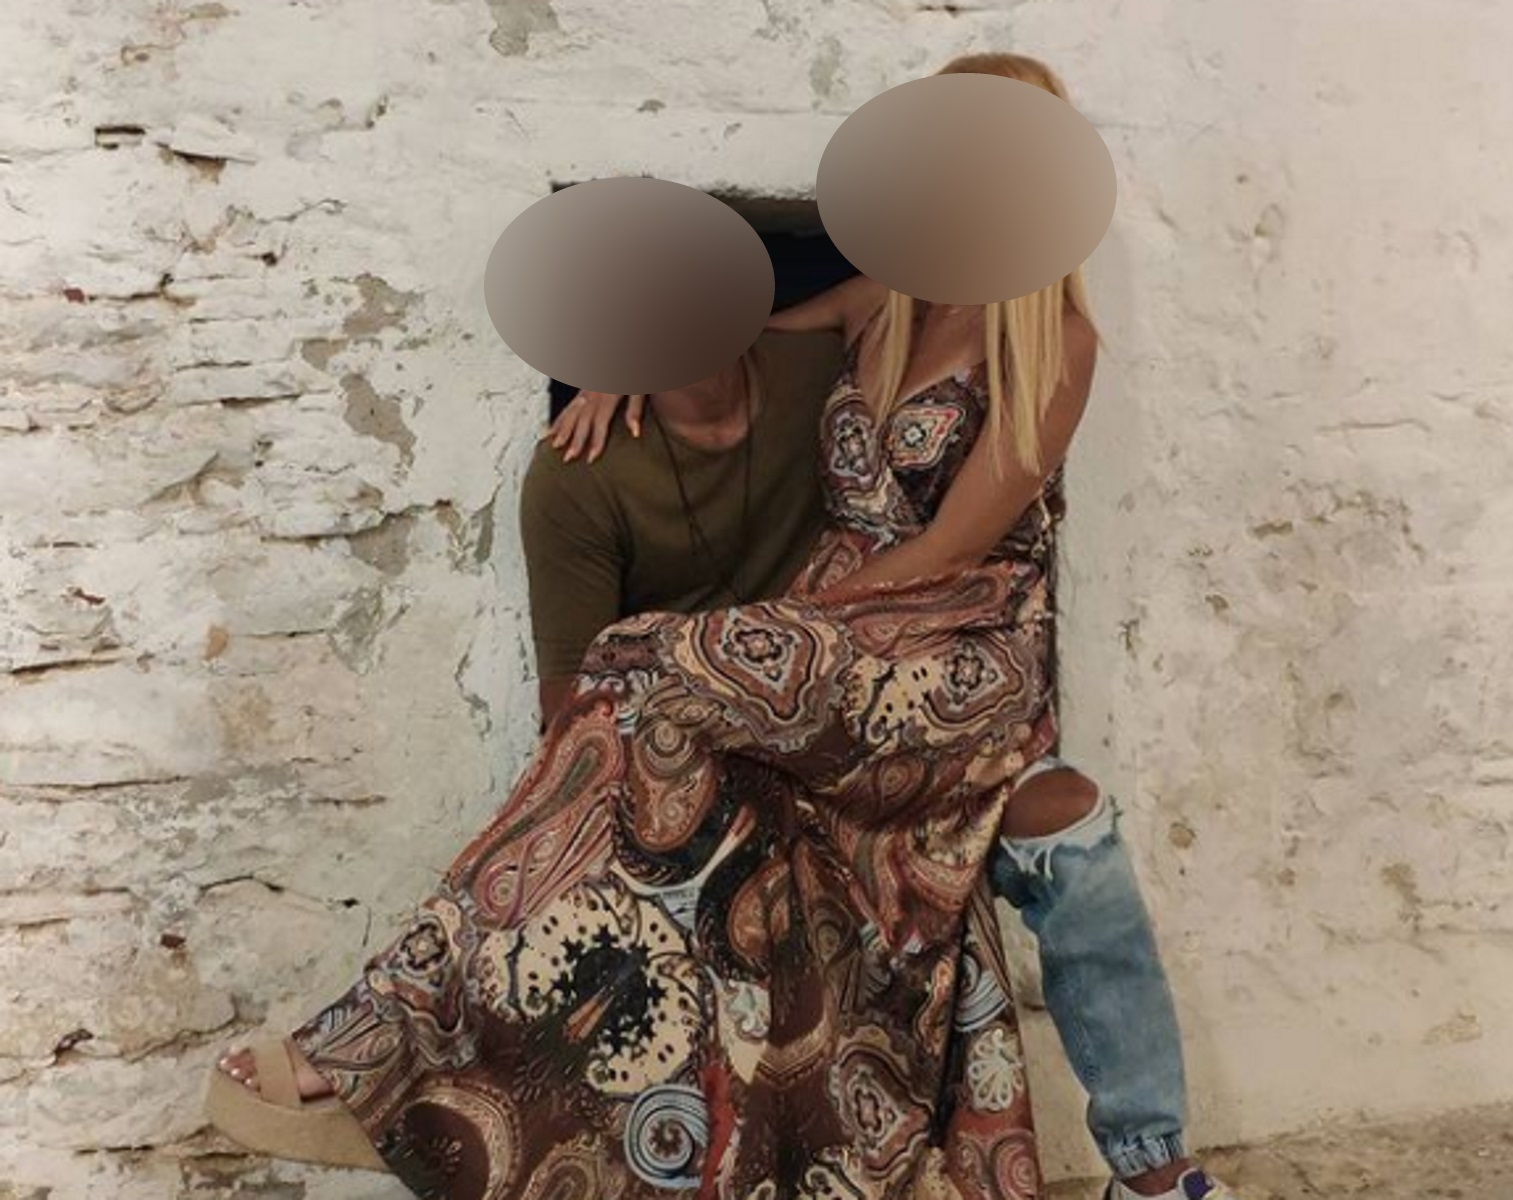 Σύλληψη μοντέλου για κοκαΐνη: Στον ανακριτή σήμερα η 29χρονη μαζί με τον σύντροφό της